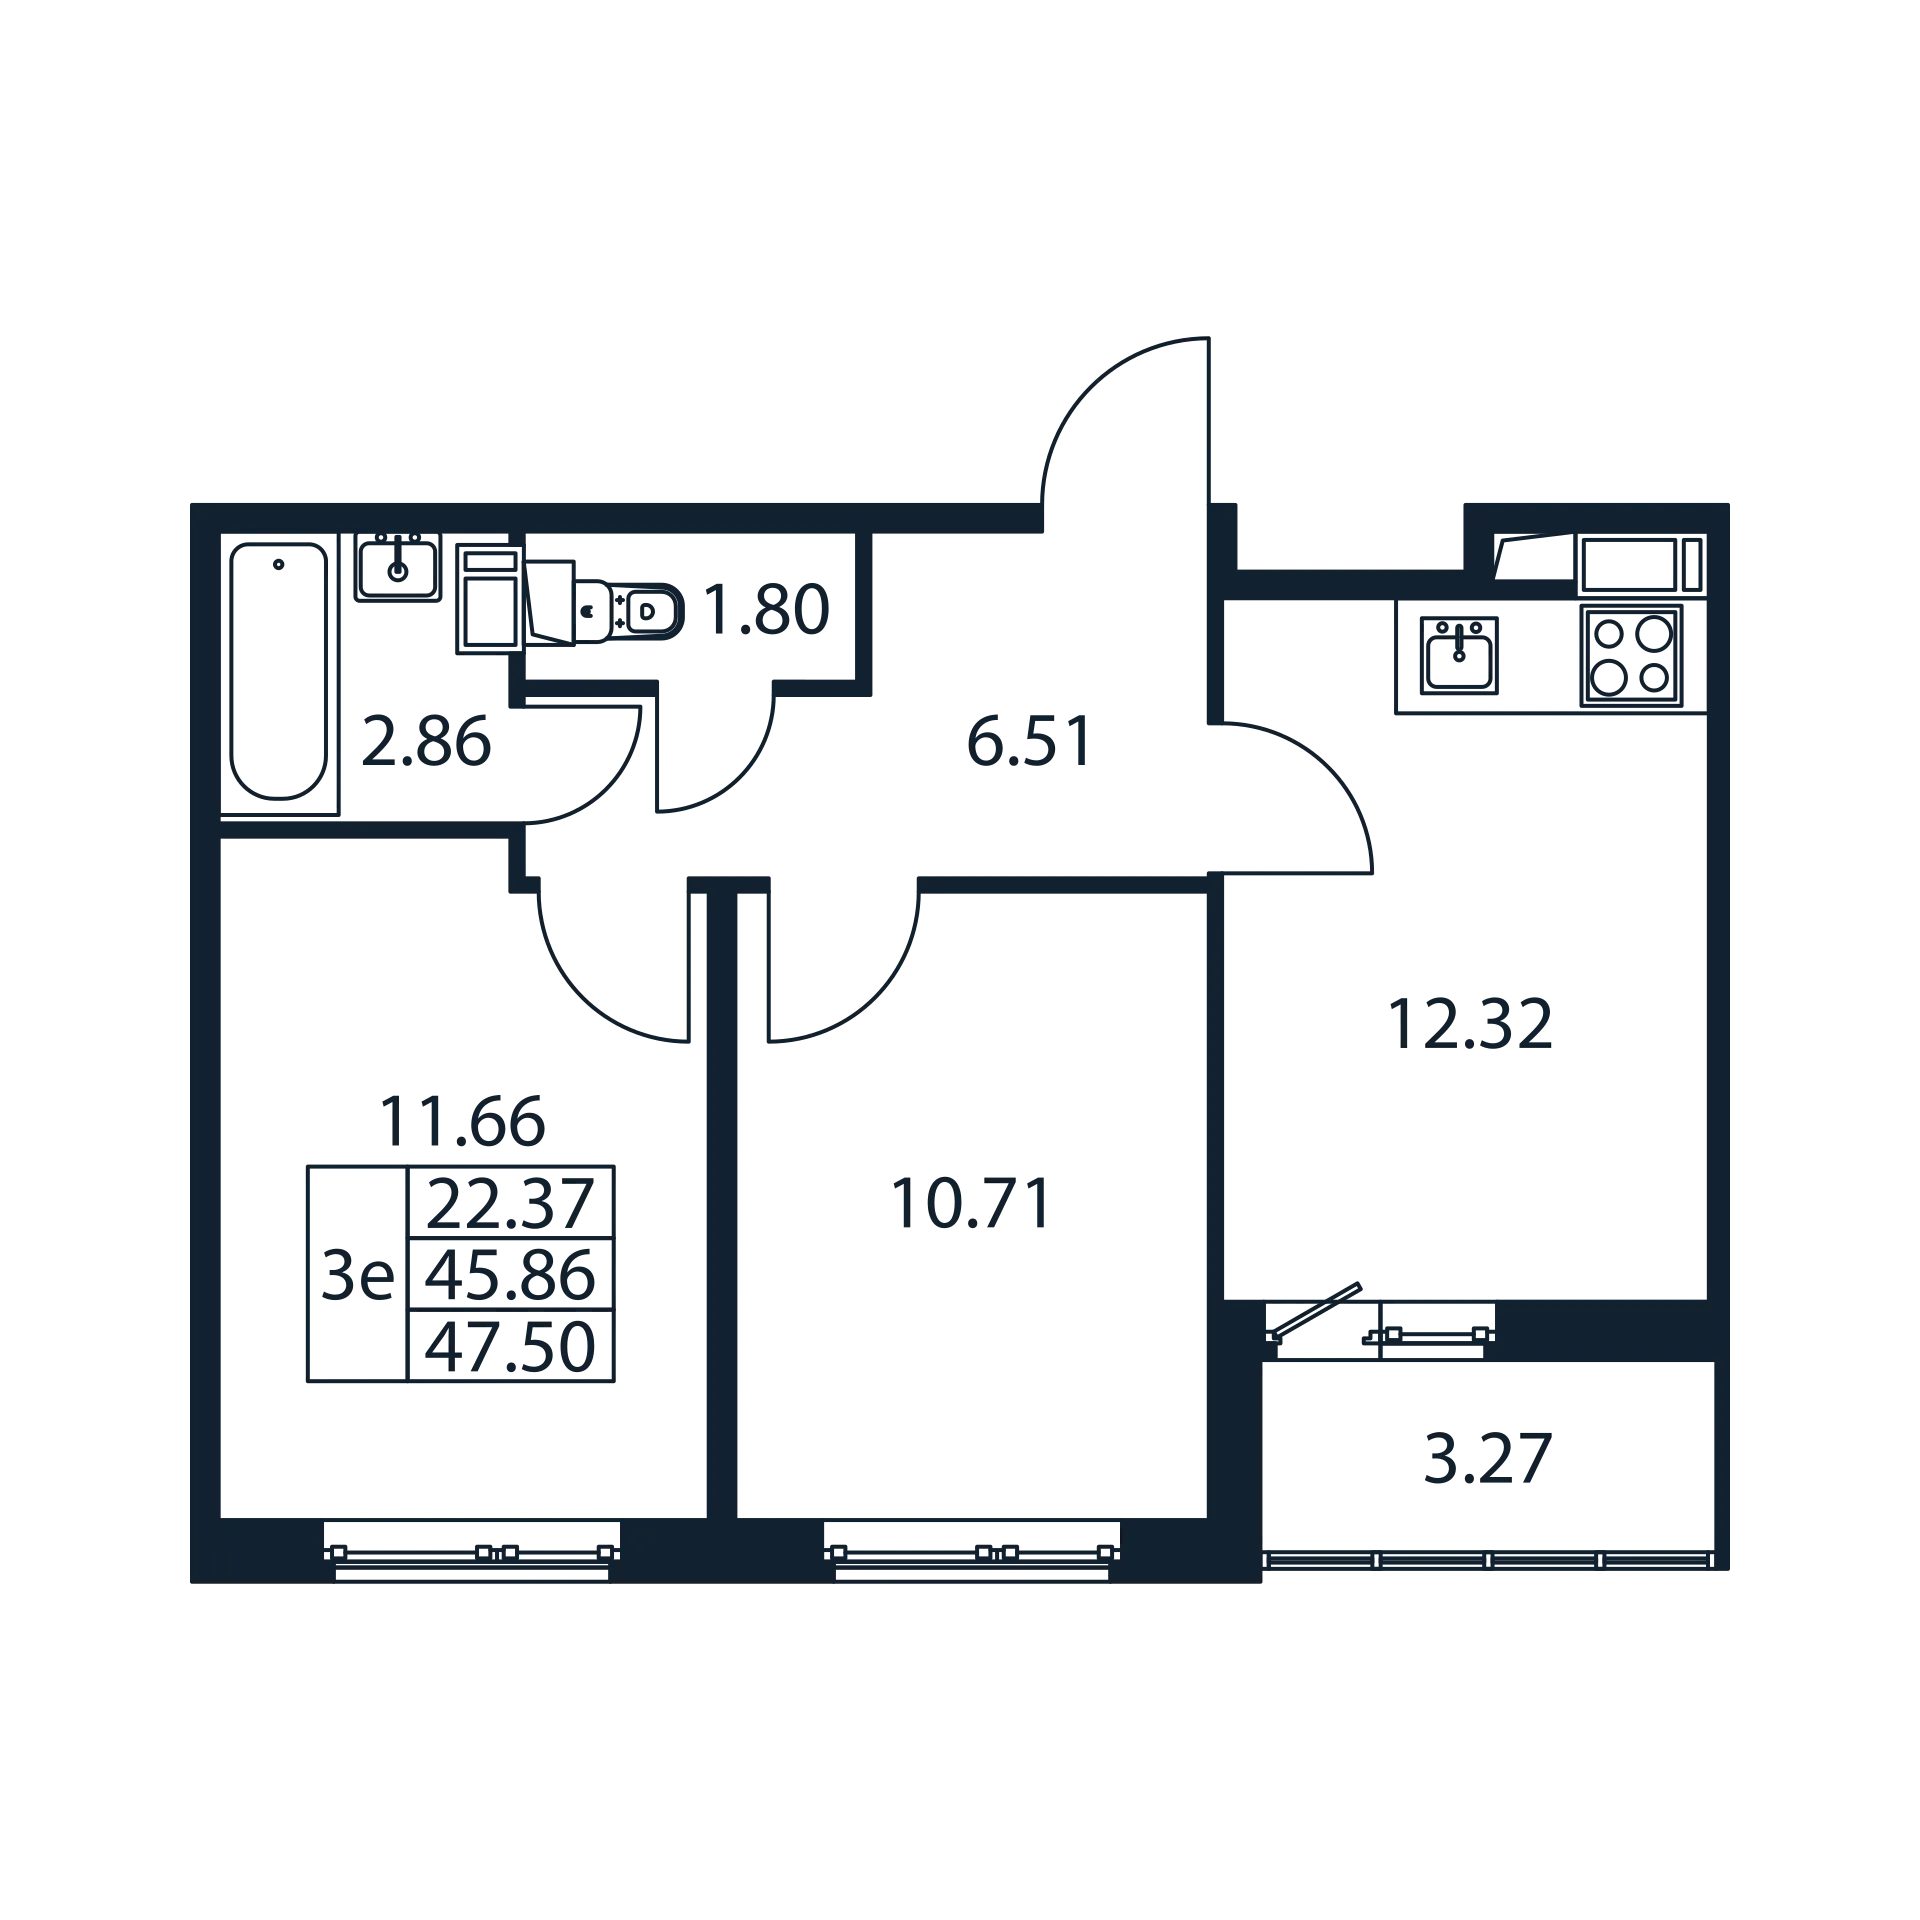 2-комнатная квартира, 45.86 м² в ЖК "Полис ЛАВрики" - планировка, фото №1